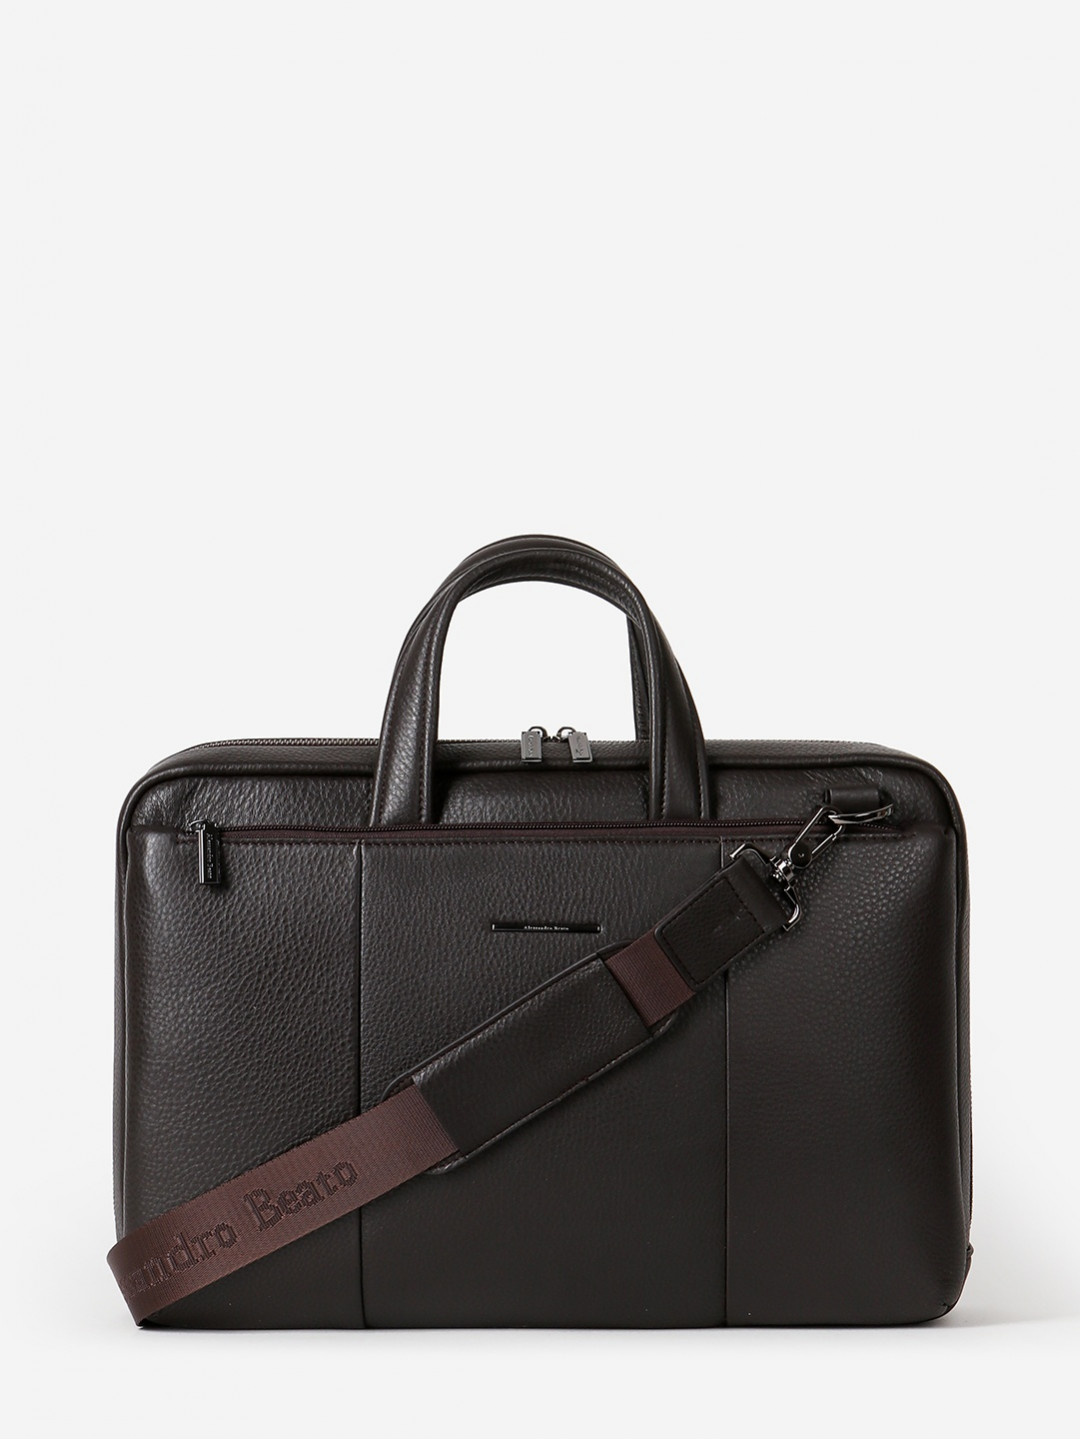 Фото Кожаная деловая сумка формата А4 в коричневом цвете Деловые сумки (А4)